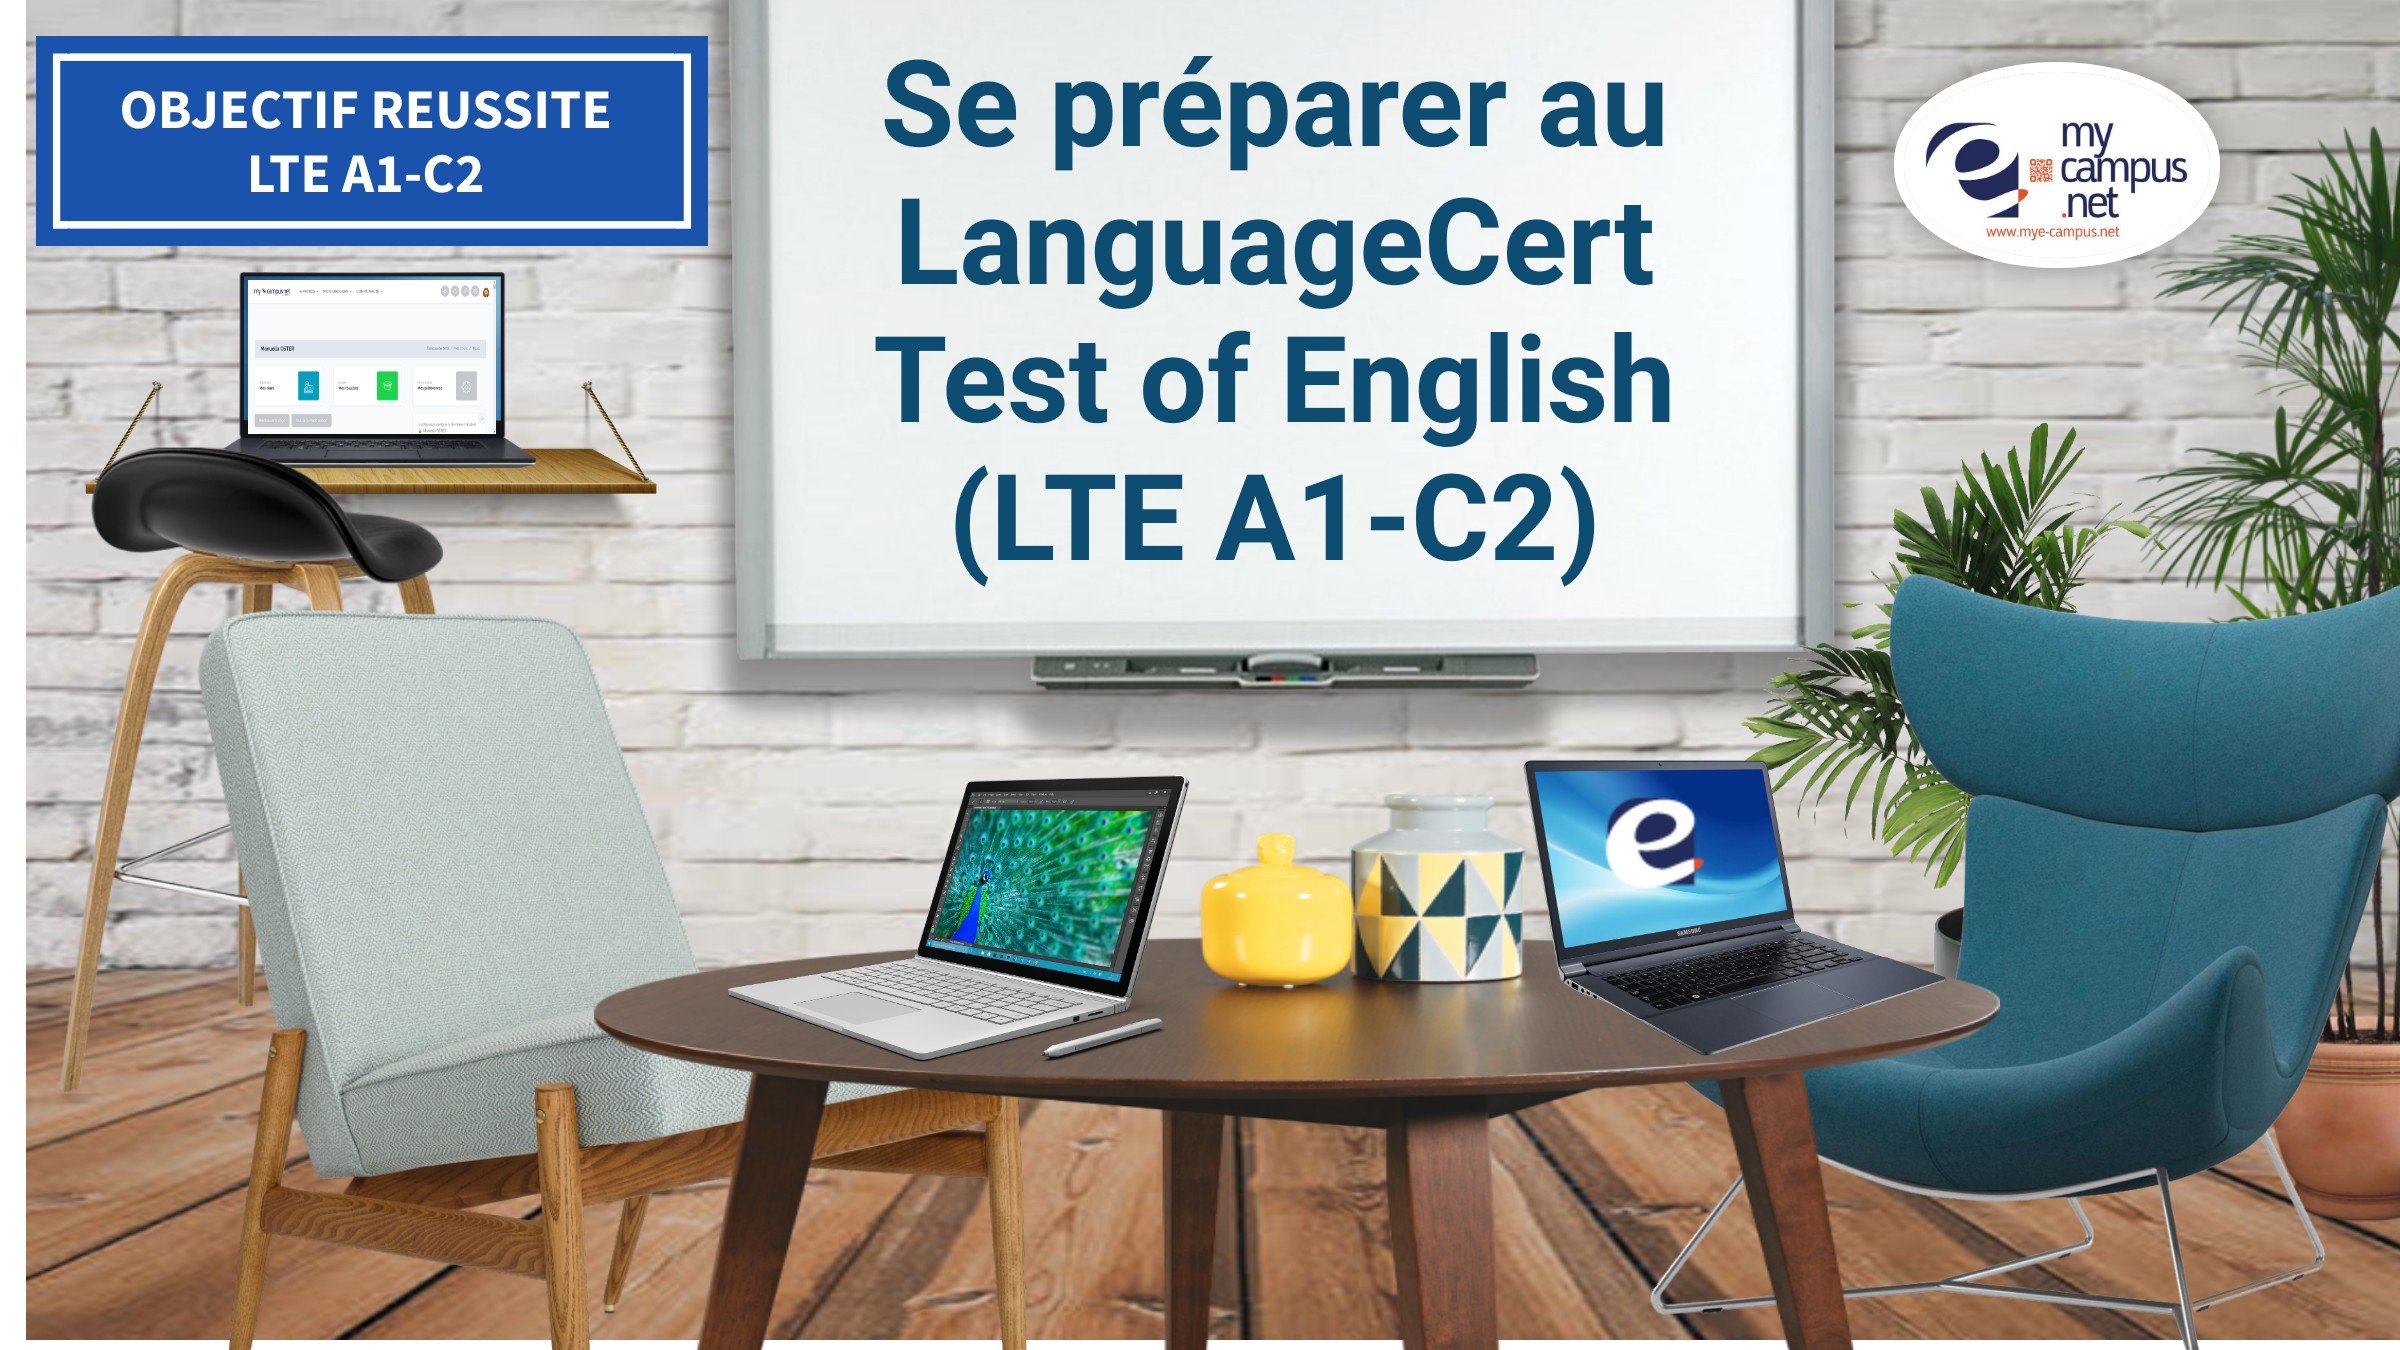 Objectif Réussite-LTE A1-C2 (LanguageCert Test of English)